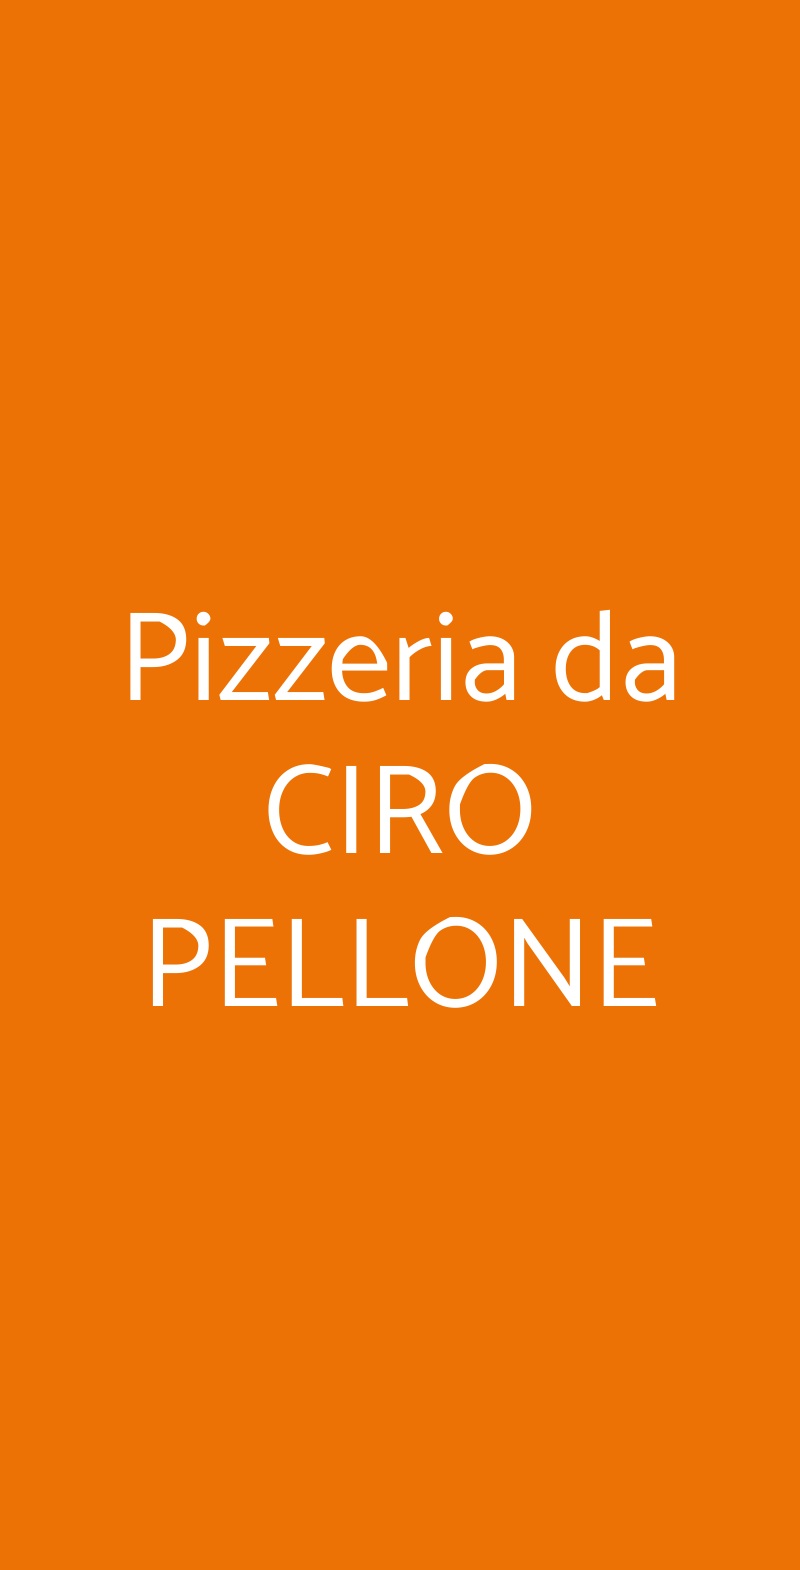 Pizzeria da CIRO PELLONE Napoli menù 1 pagina